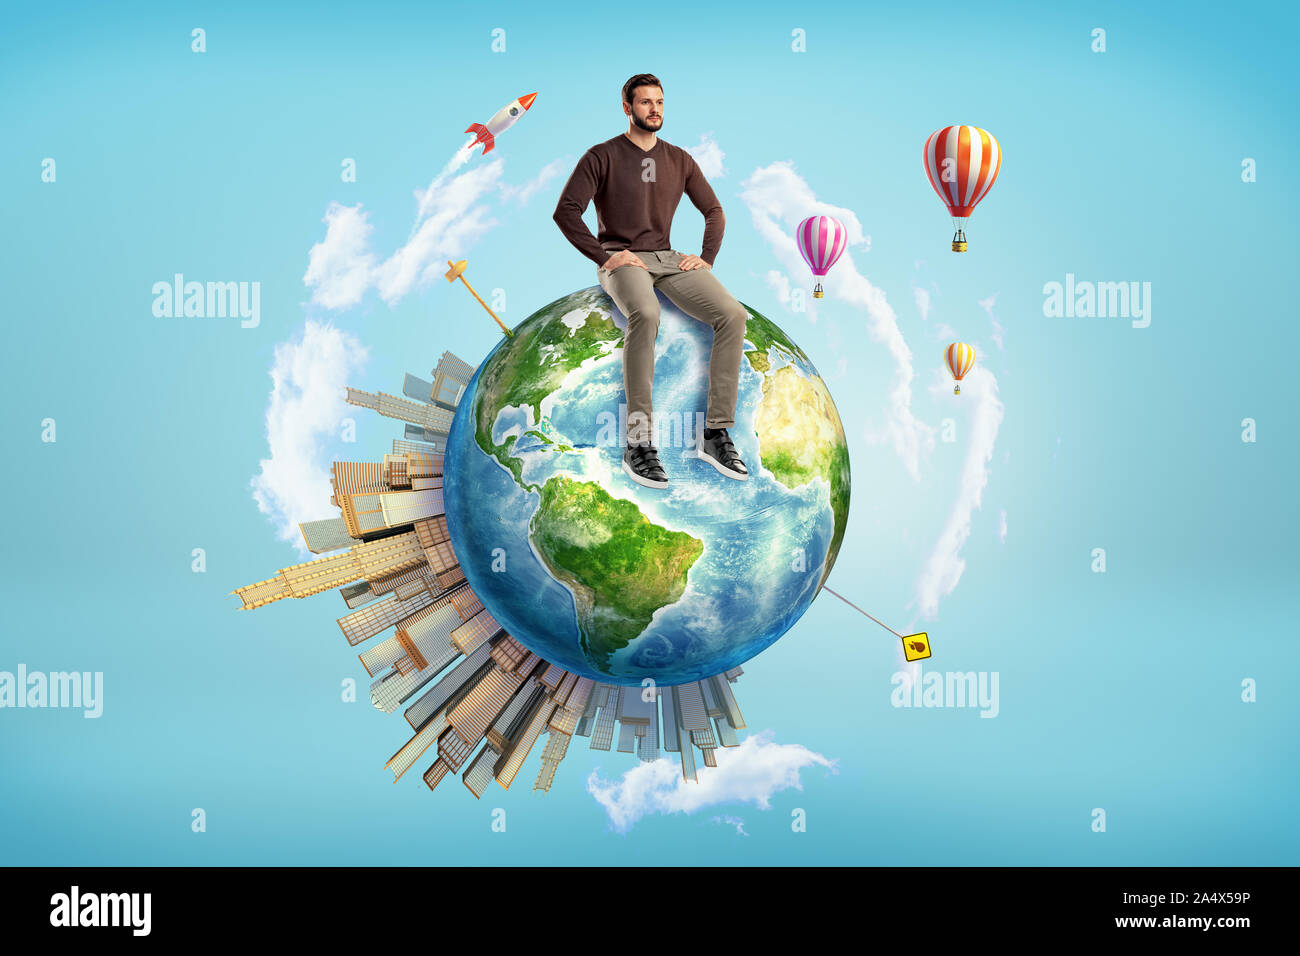 Un homme barbu est assis sur un petit globe de la Terre avec des gratte-ciel à sa surface et montgolfières volant autour. Banque D'Images